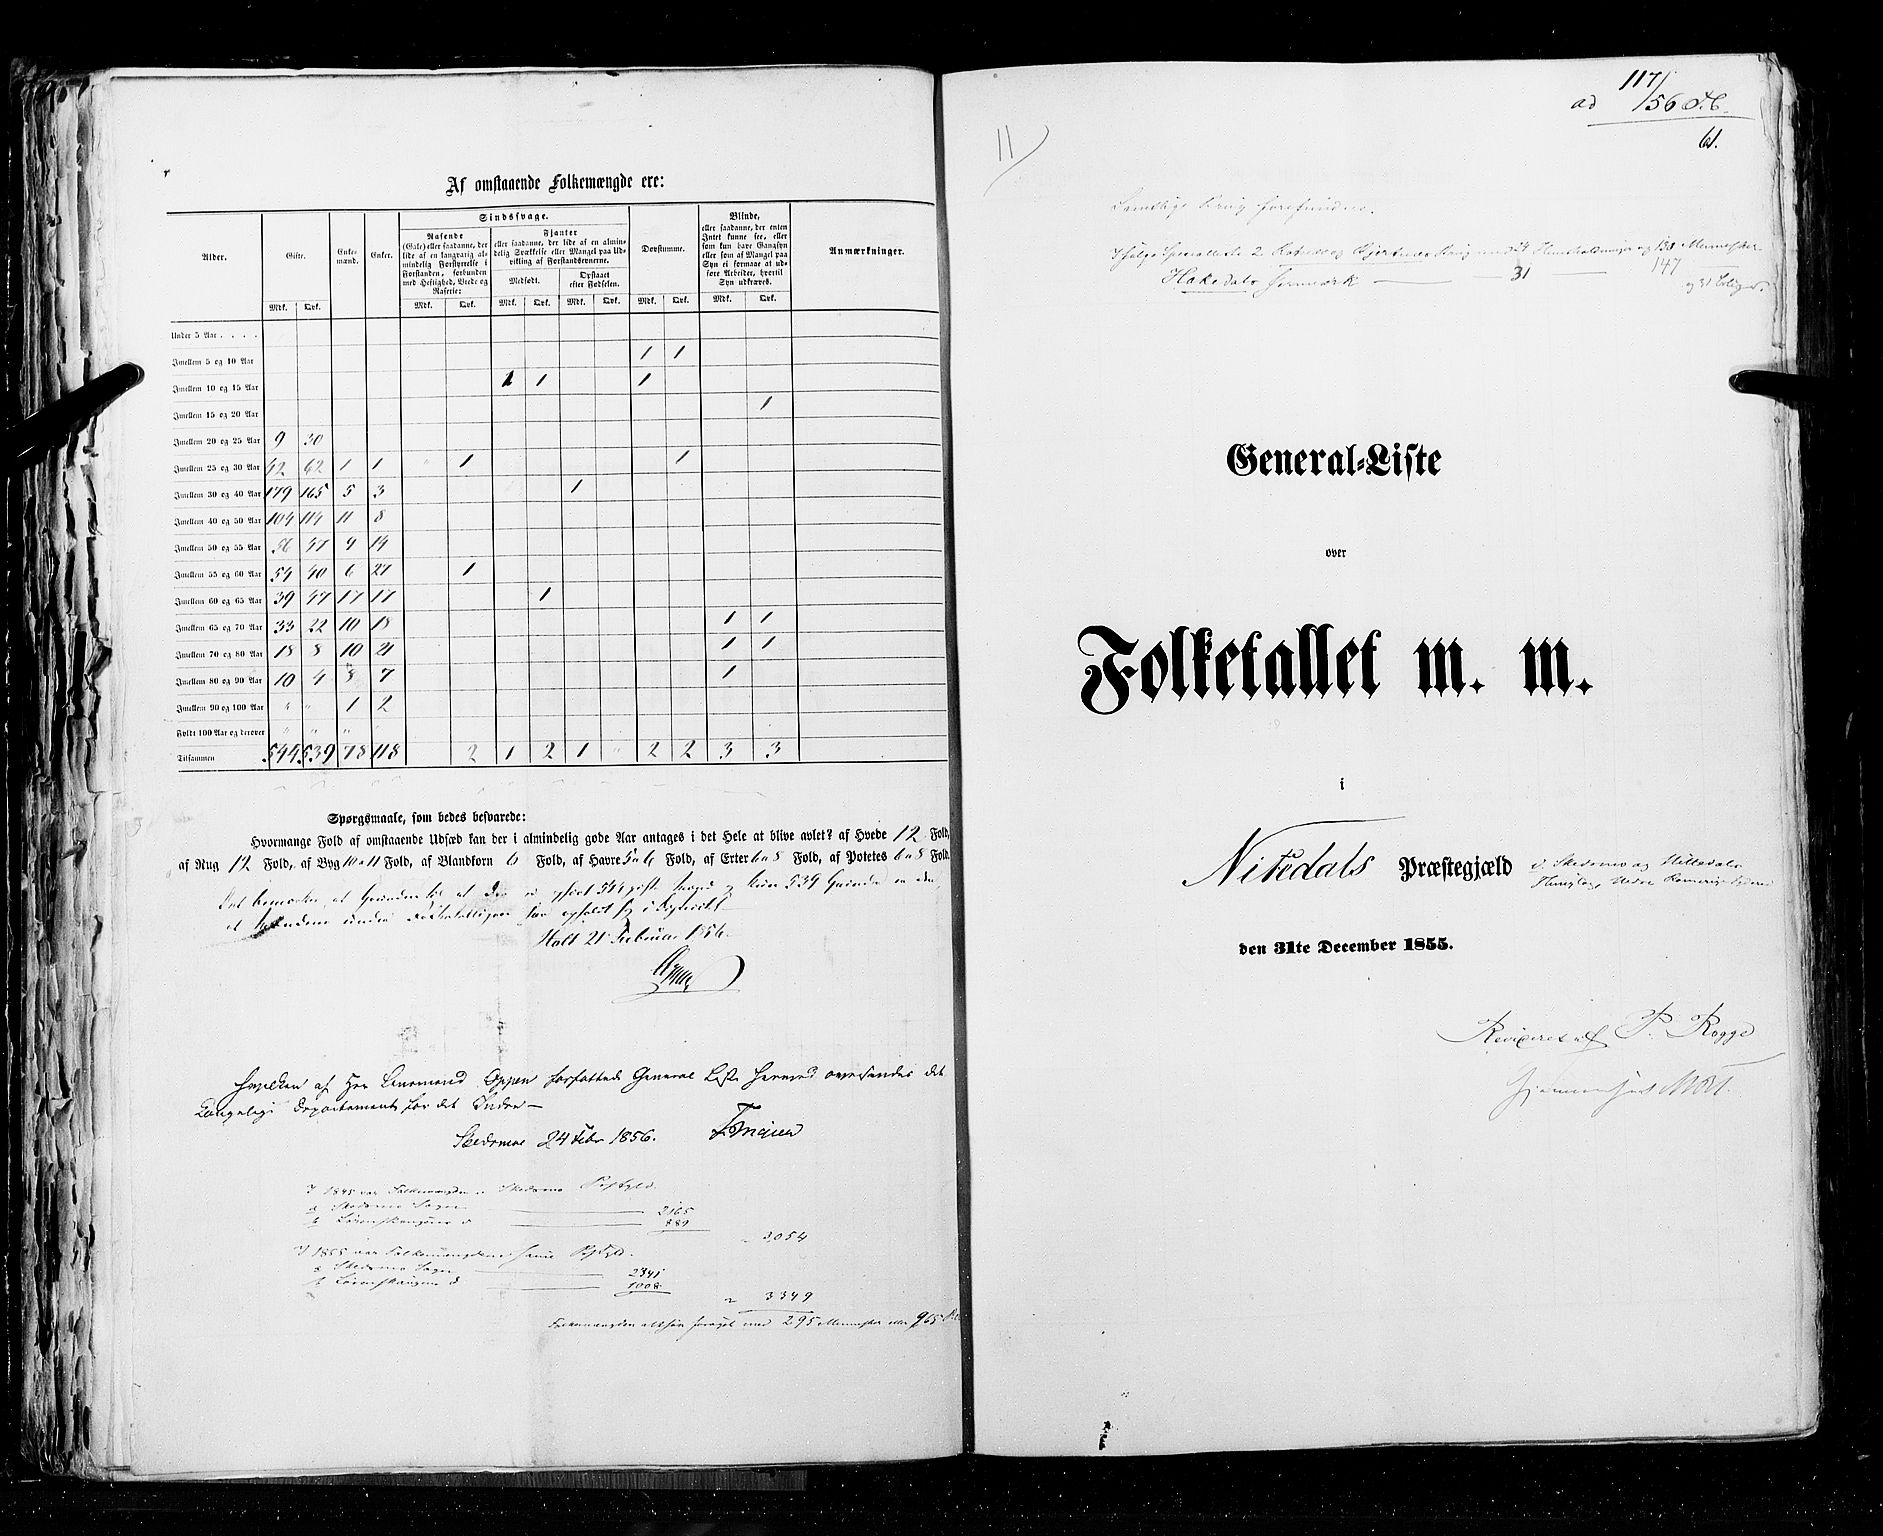 RA, Census 1855, vol. 1: Akershus amt, Smålenenes amt og Hedemarken amt, 1855, p. 61